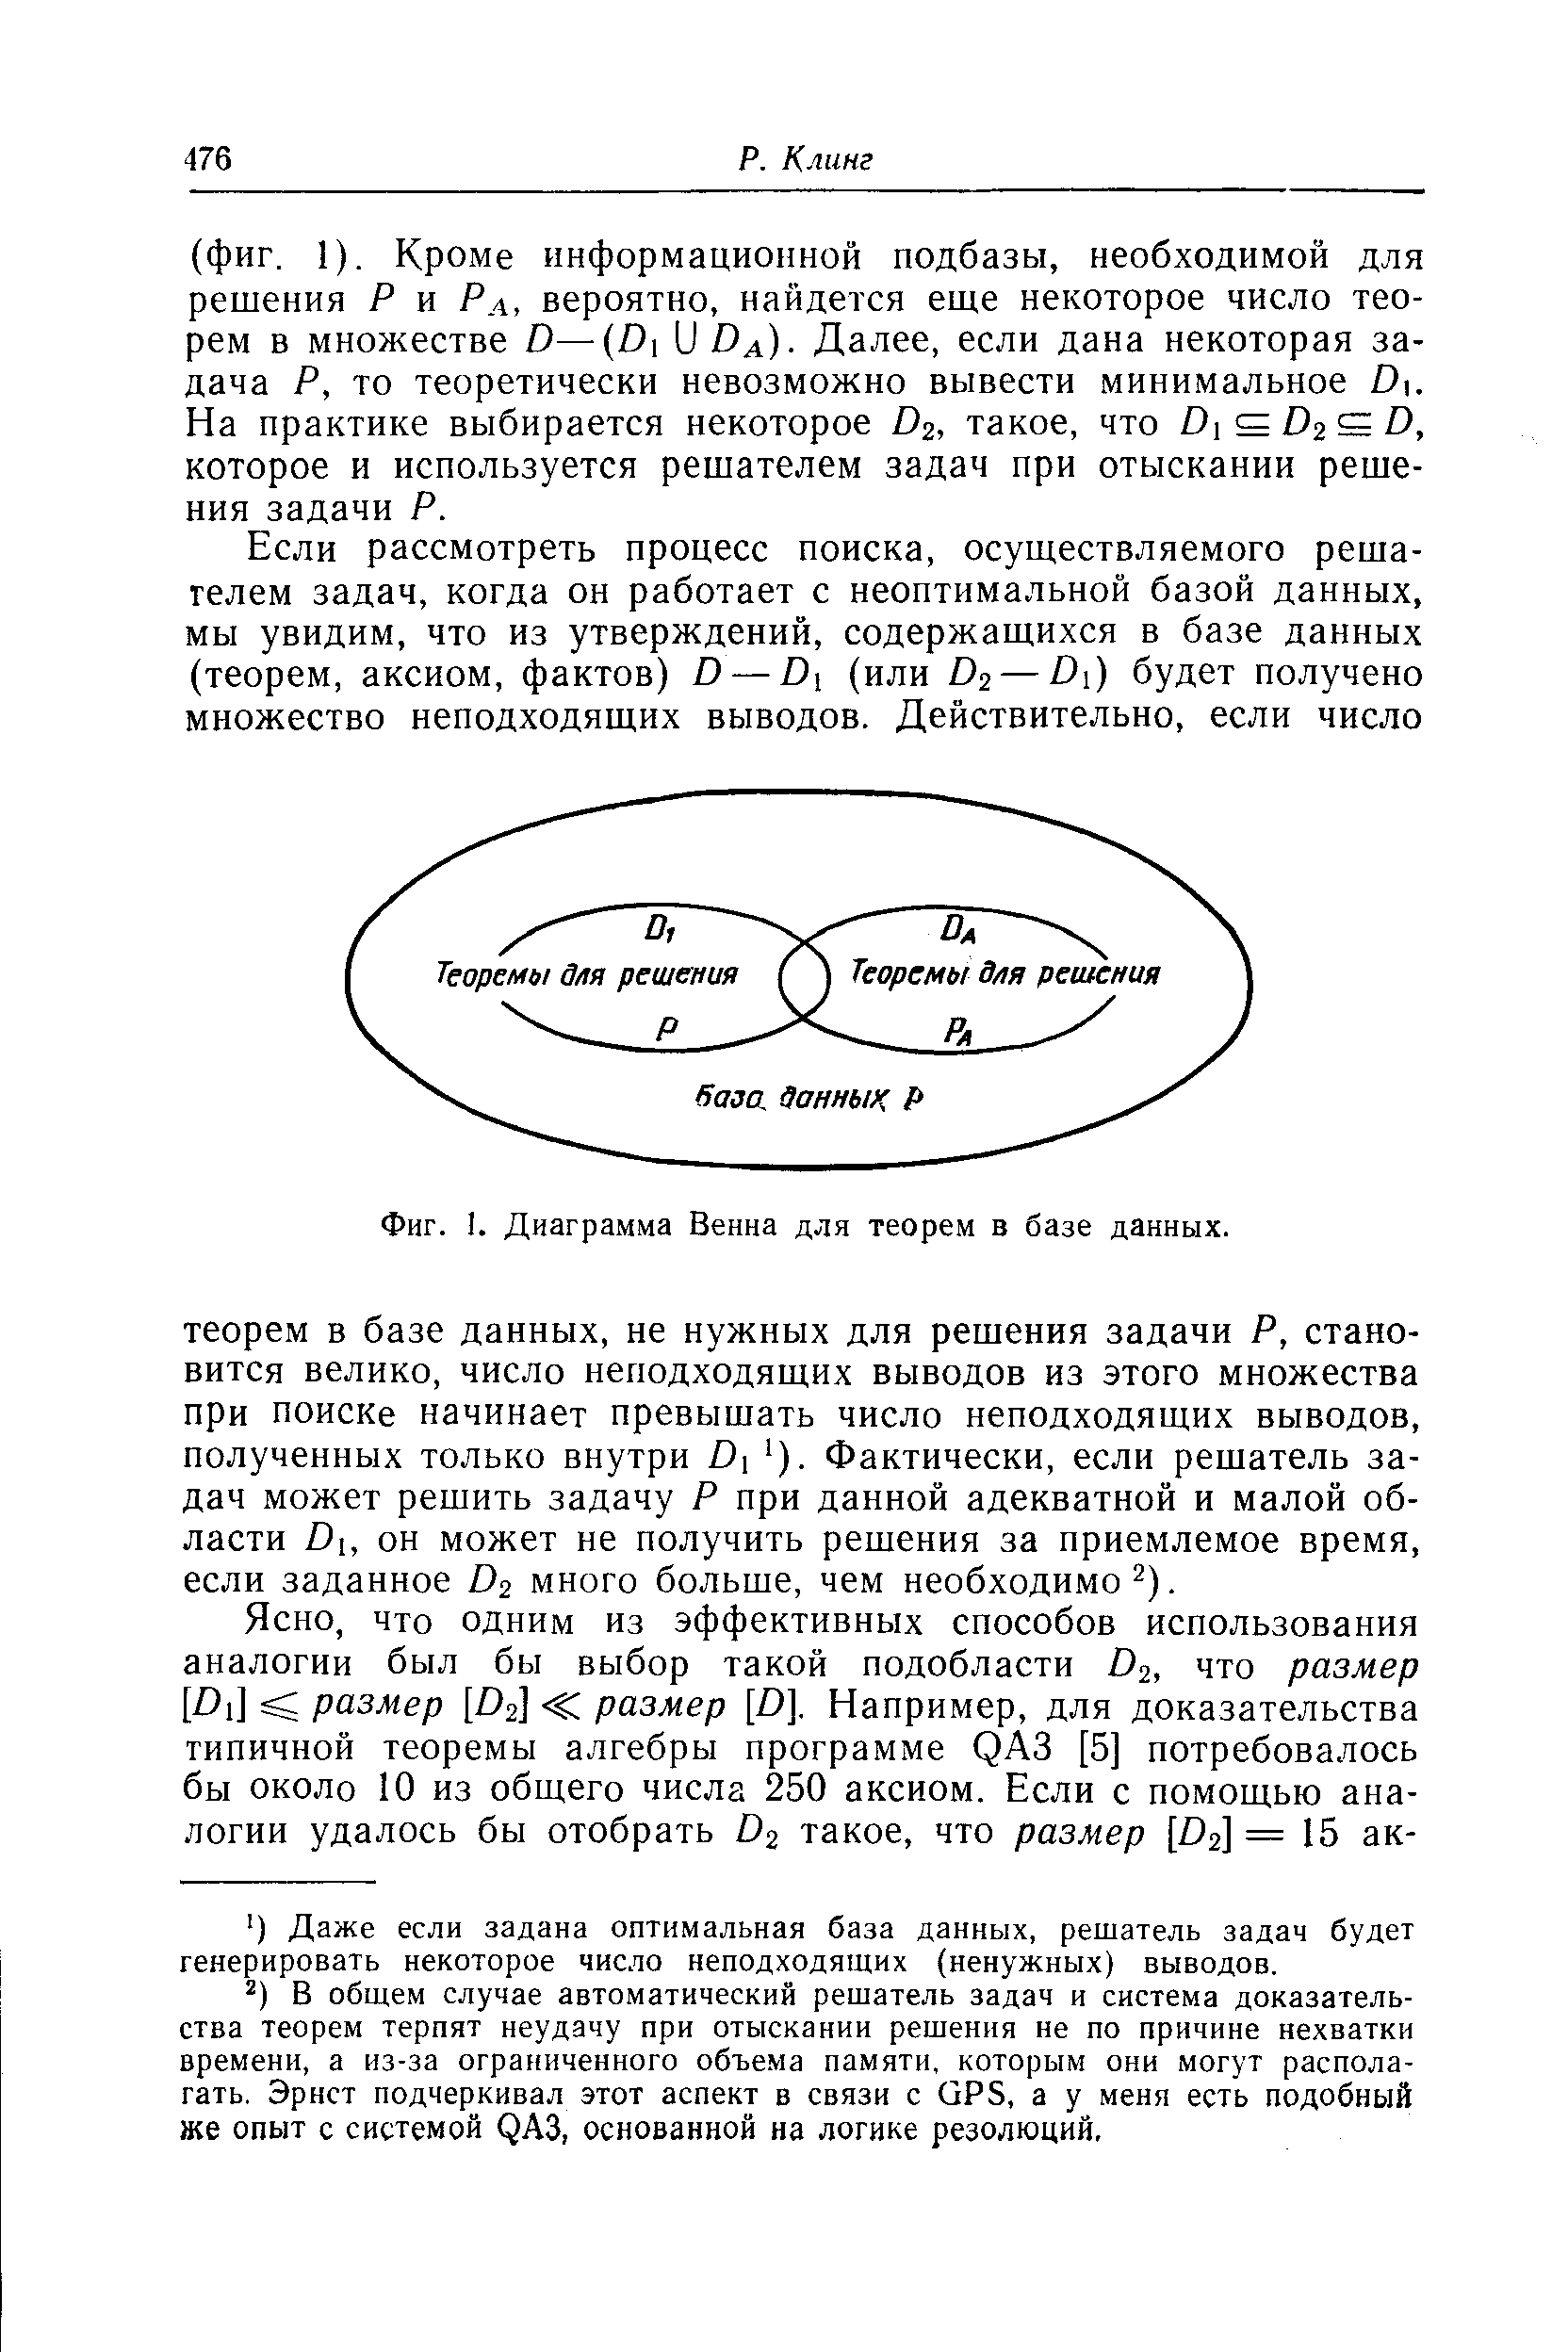 Фиг. 1. Диаграмма Венна для теорем в базе данных.
